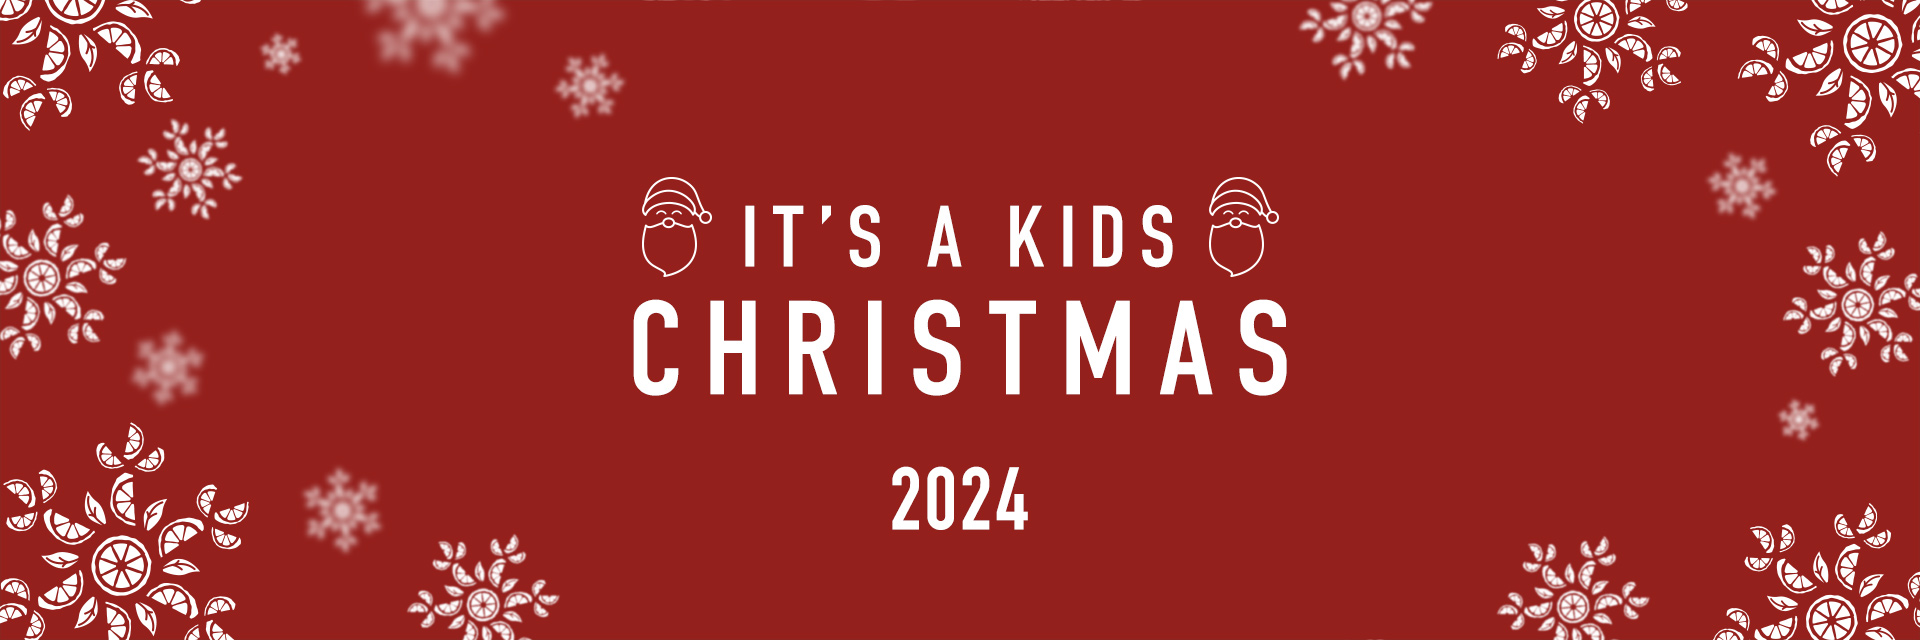 Kids Christmas Menu 2024 at Harvester George Stephenson